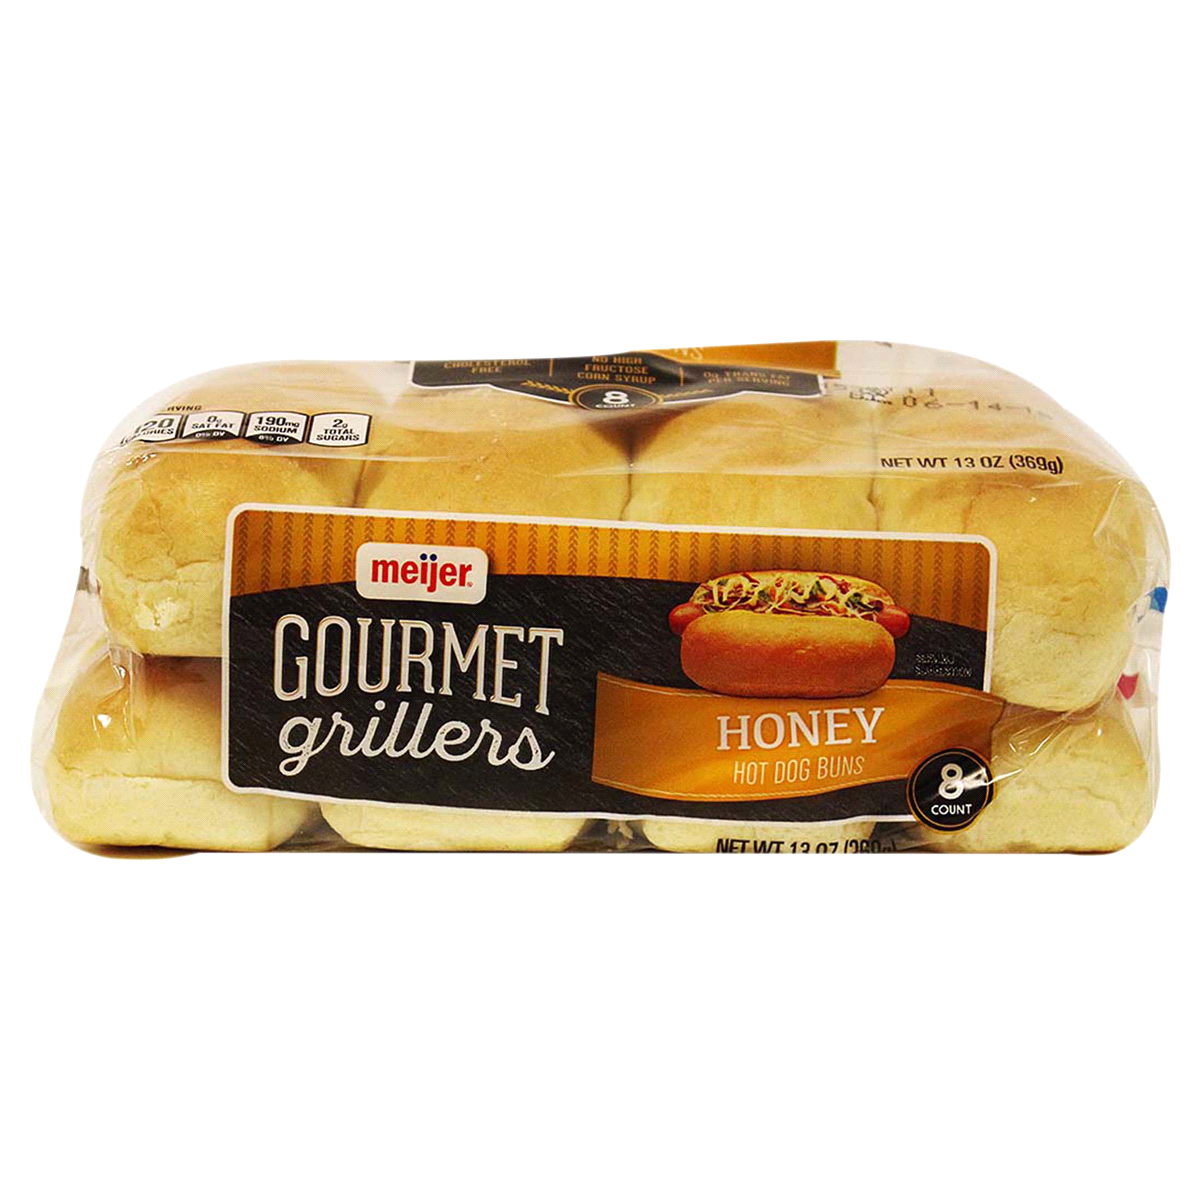 slide 6 of 6, Meijer Gourmet Griller Honey Hot Dog Bun, 8 ct